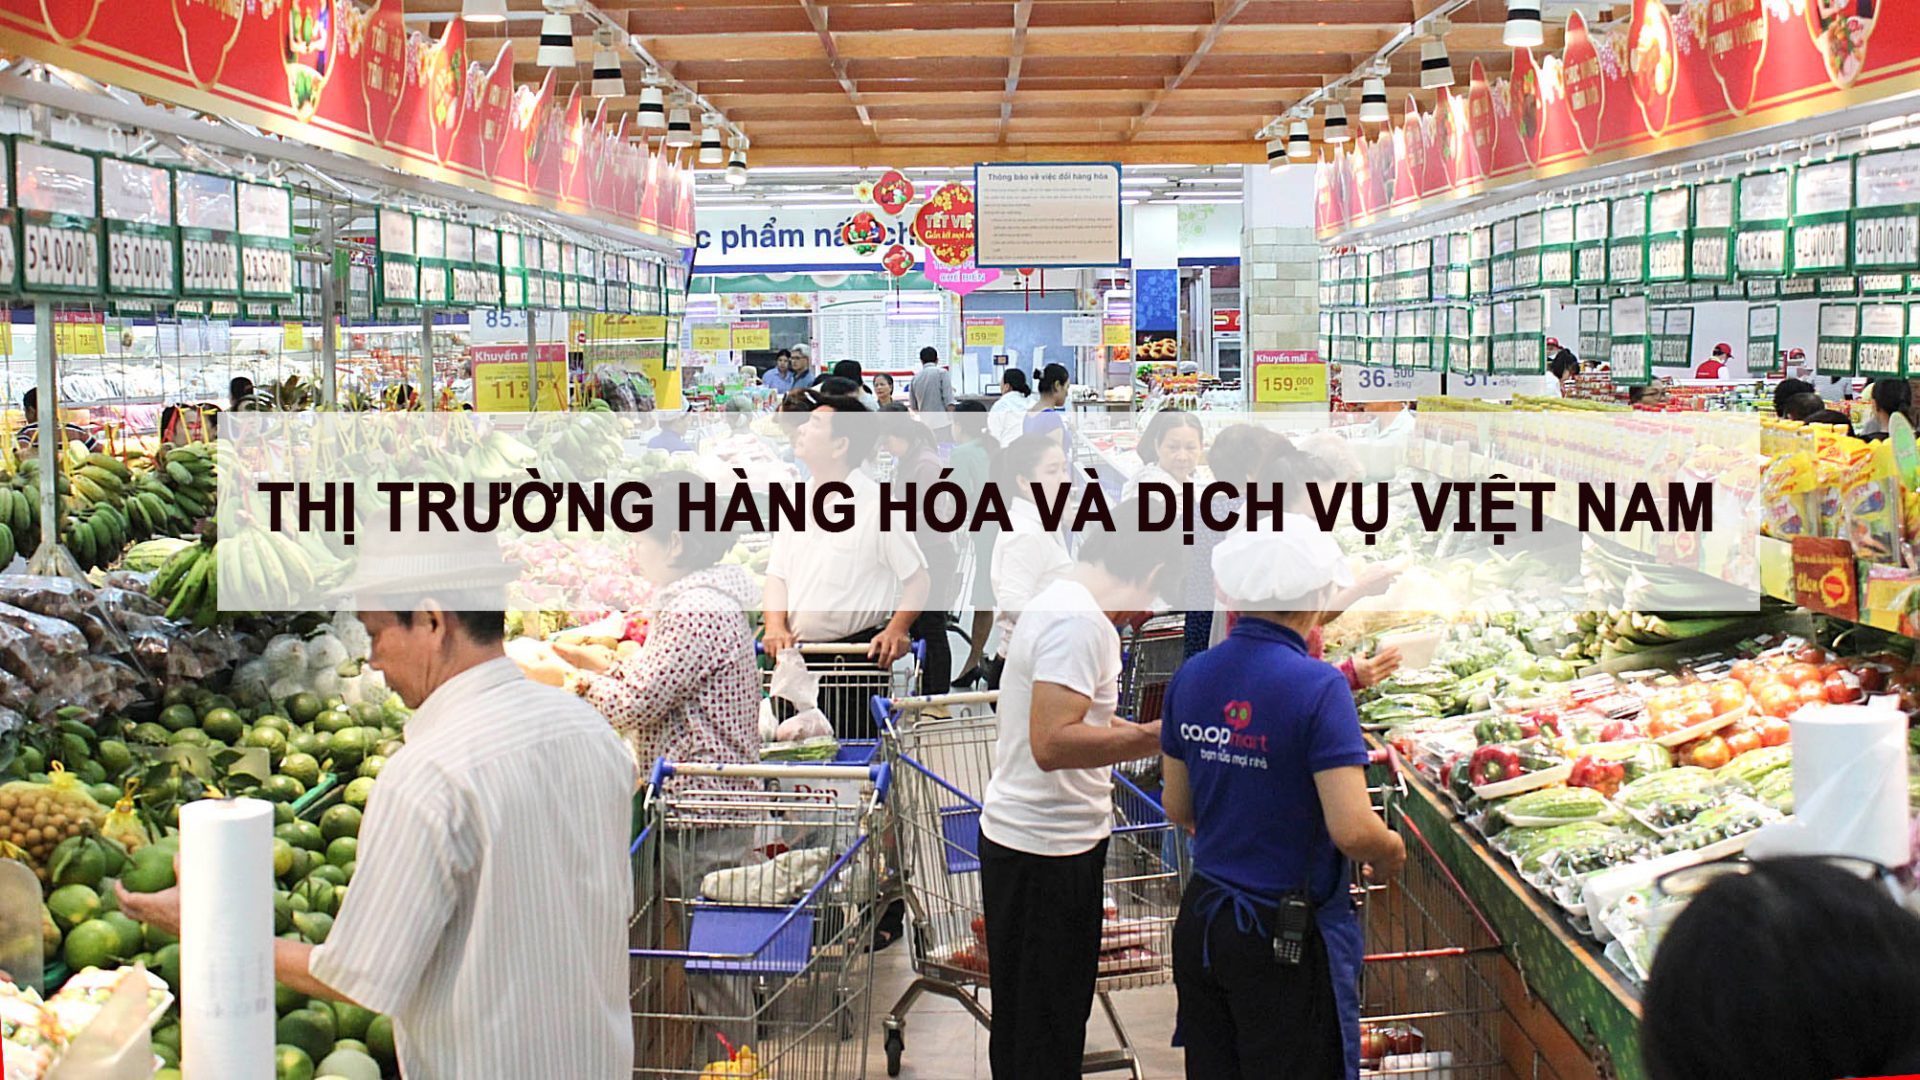 Thị trường hàng hóa và dịch vụ Việt Nam